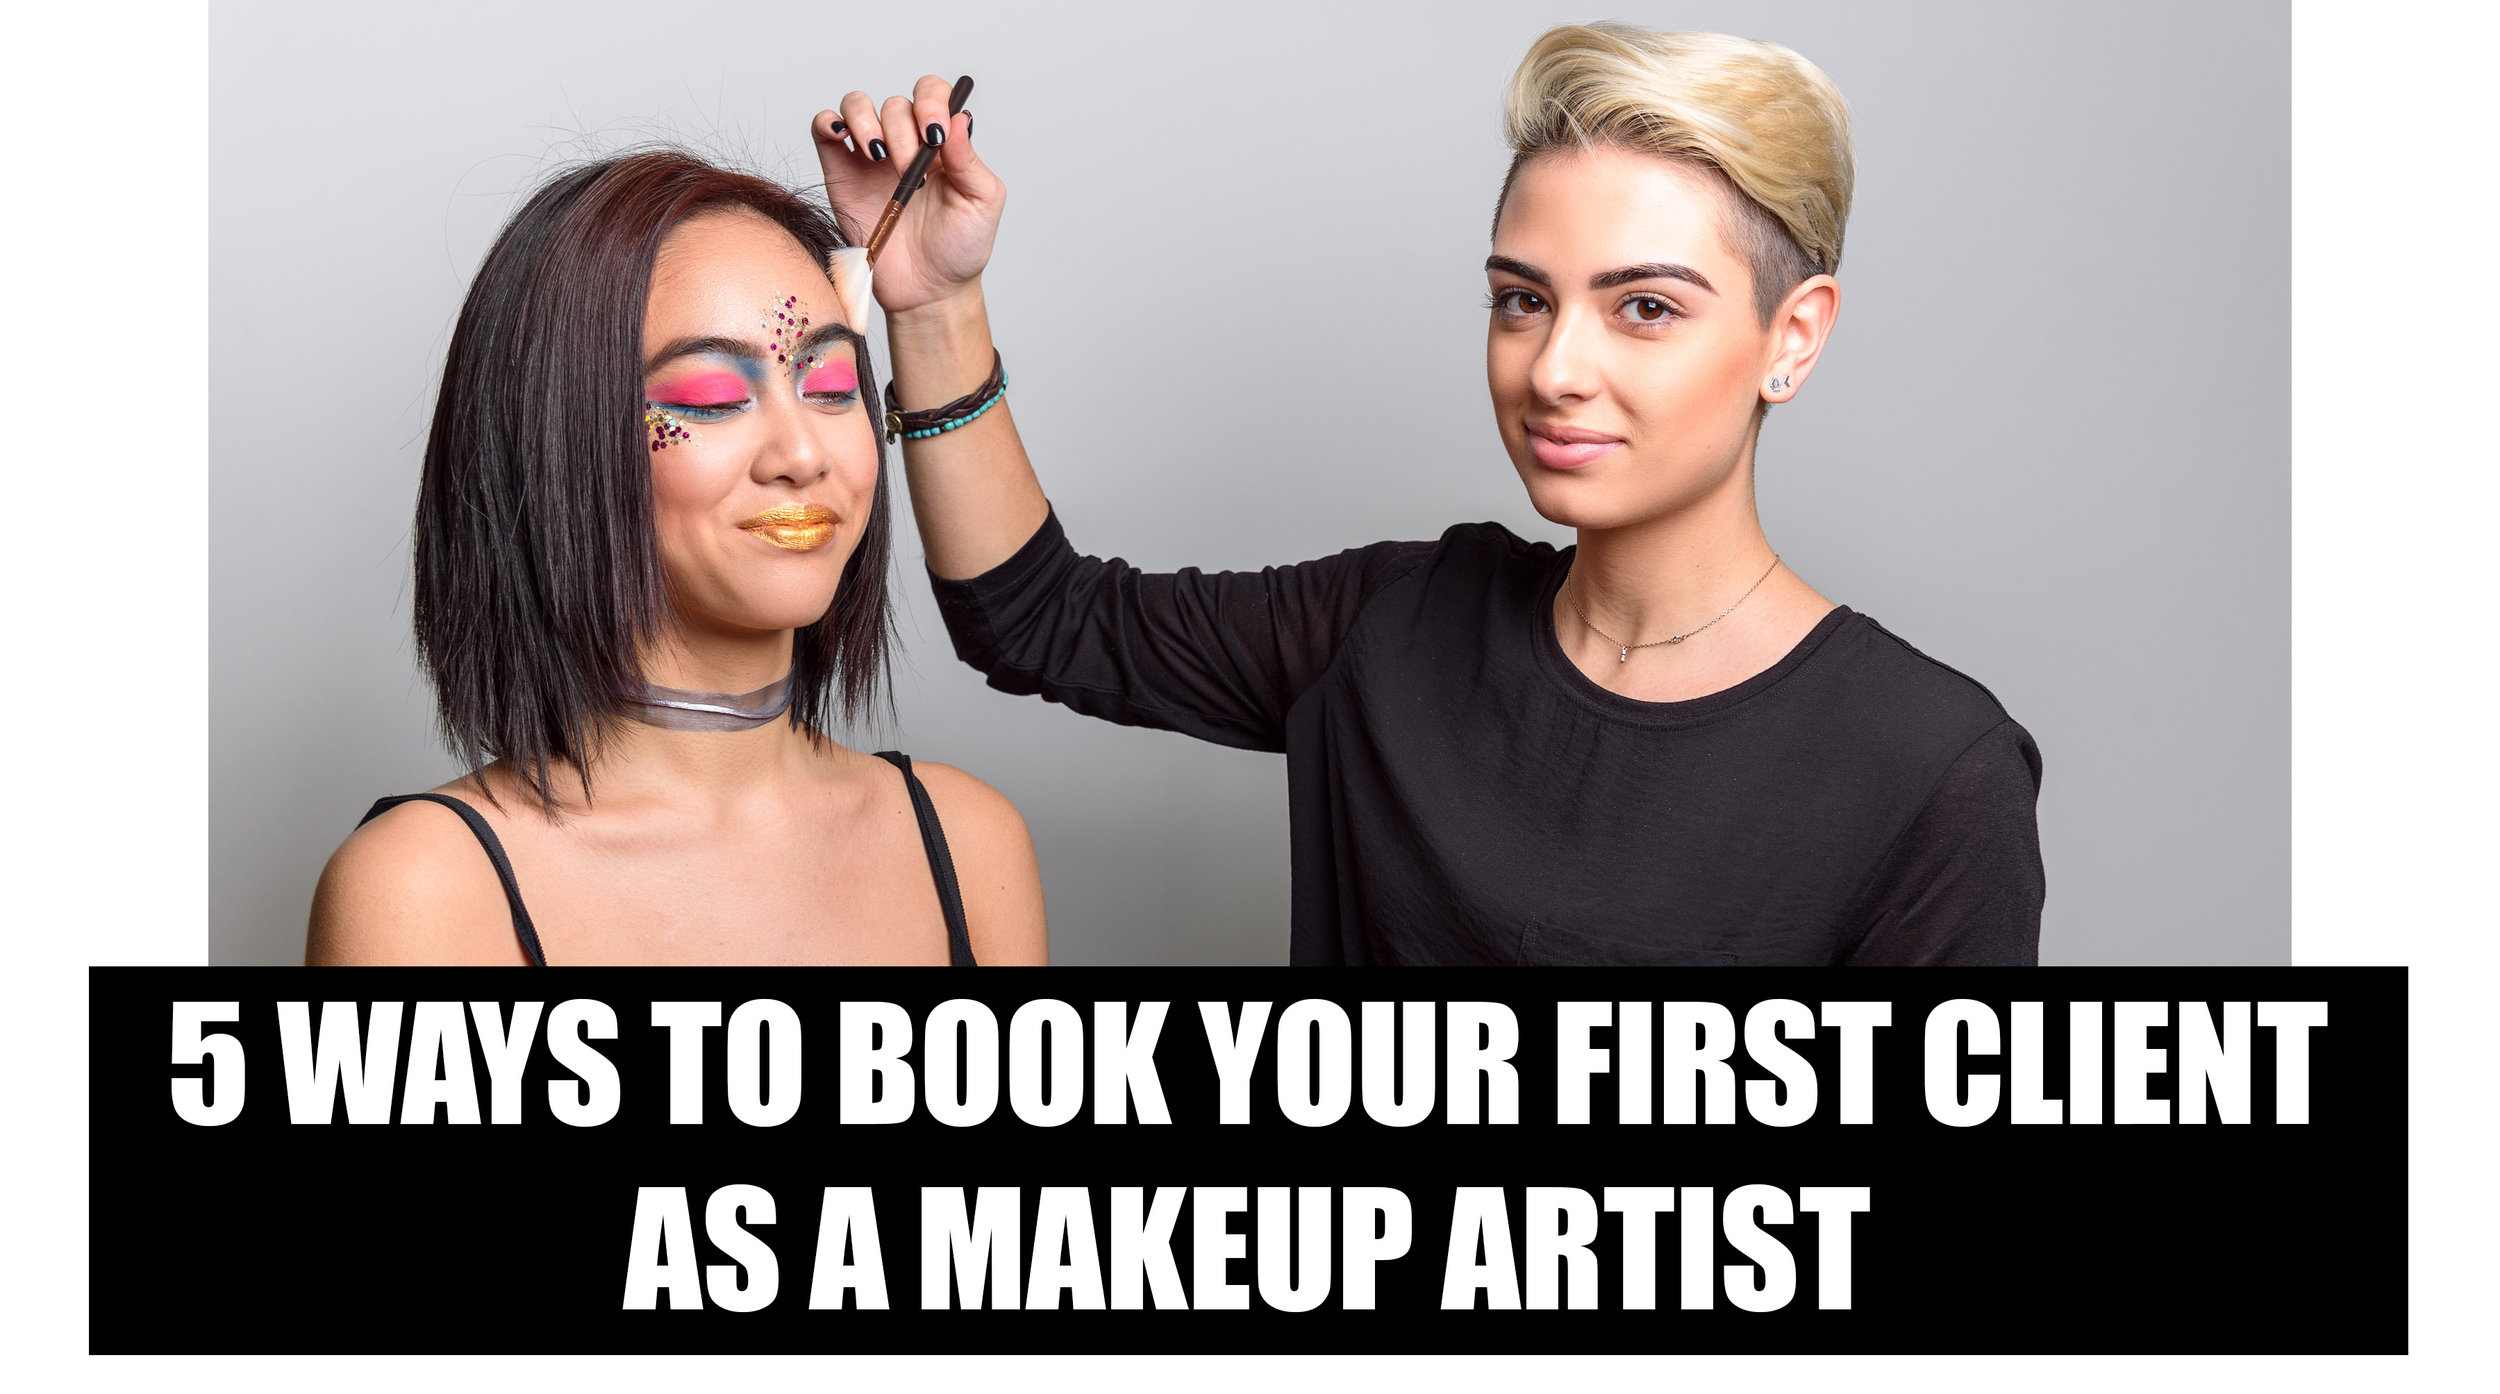 5 Ways to Book Your First Client as a Makeup Artist.jpeg